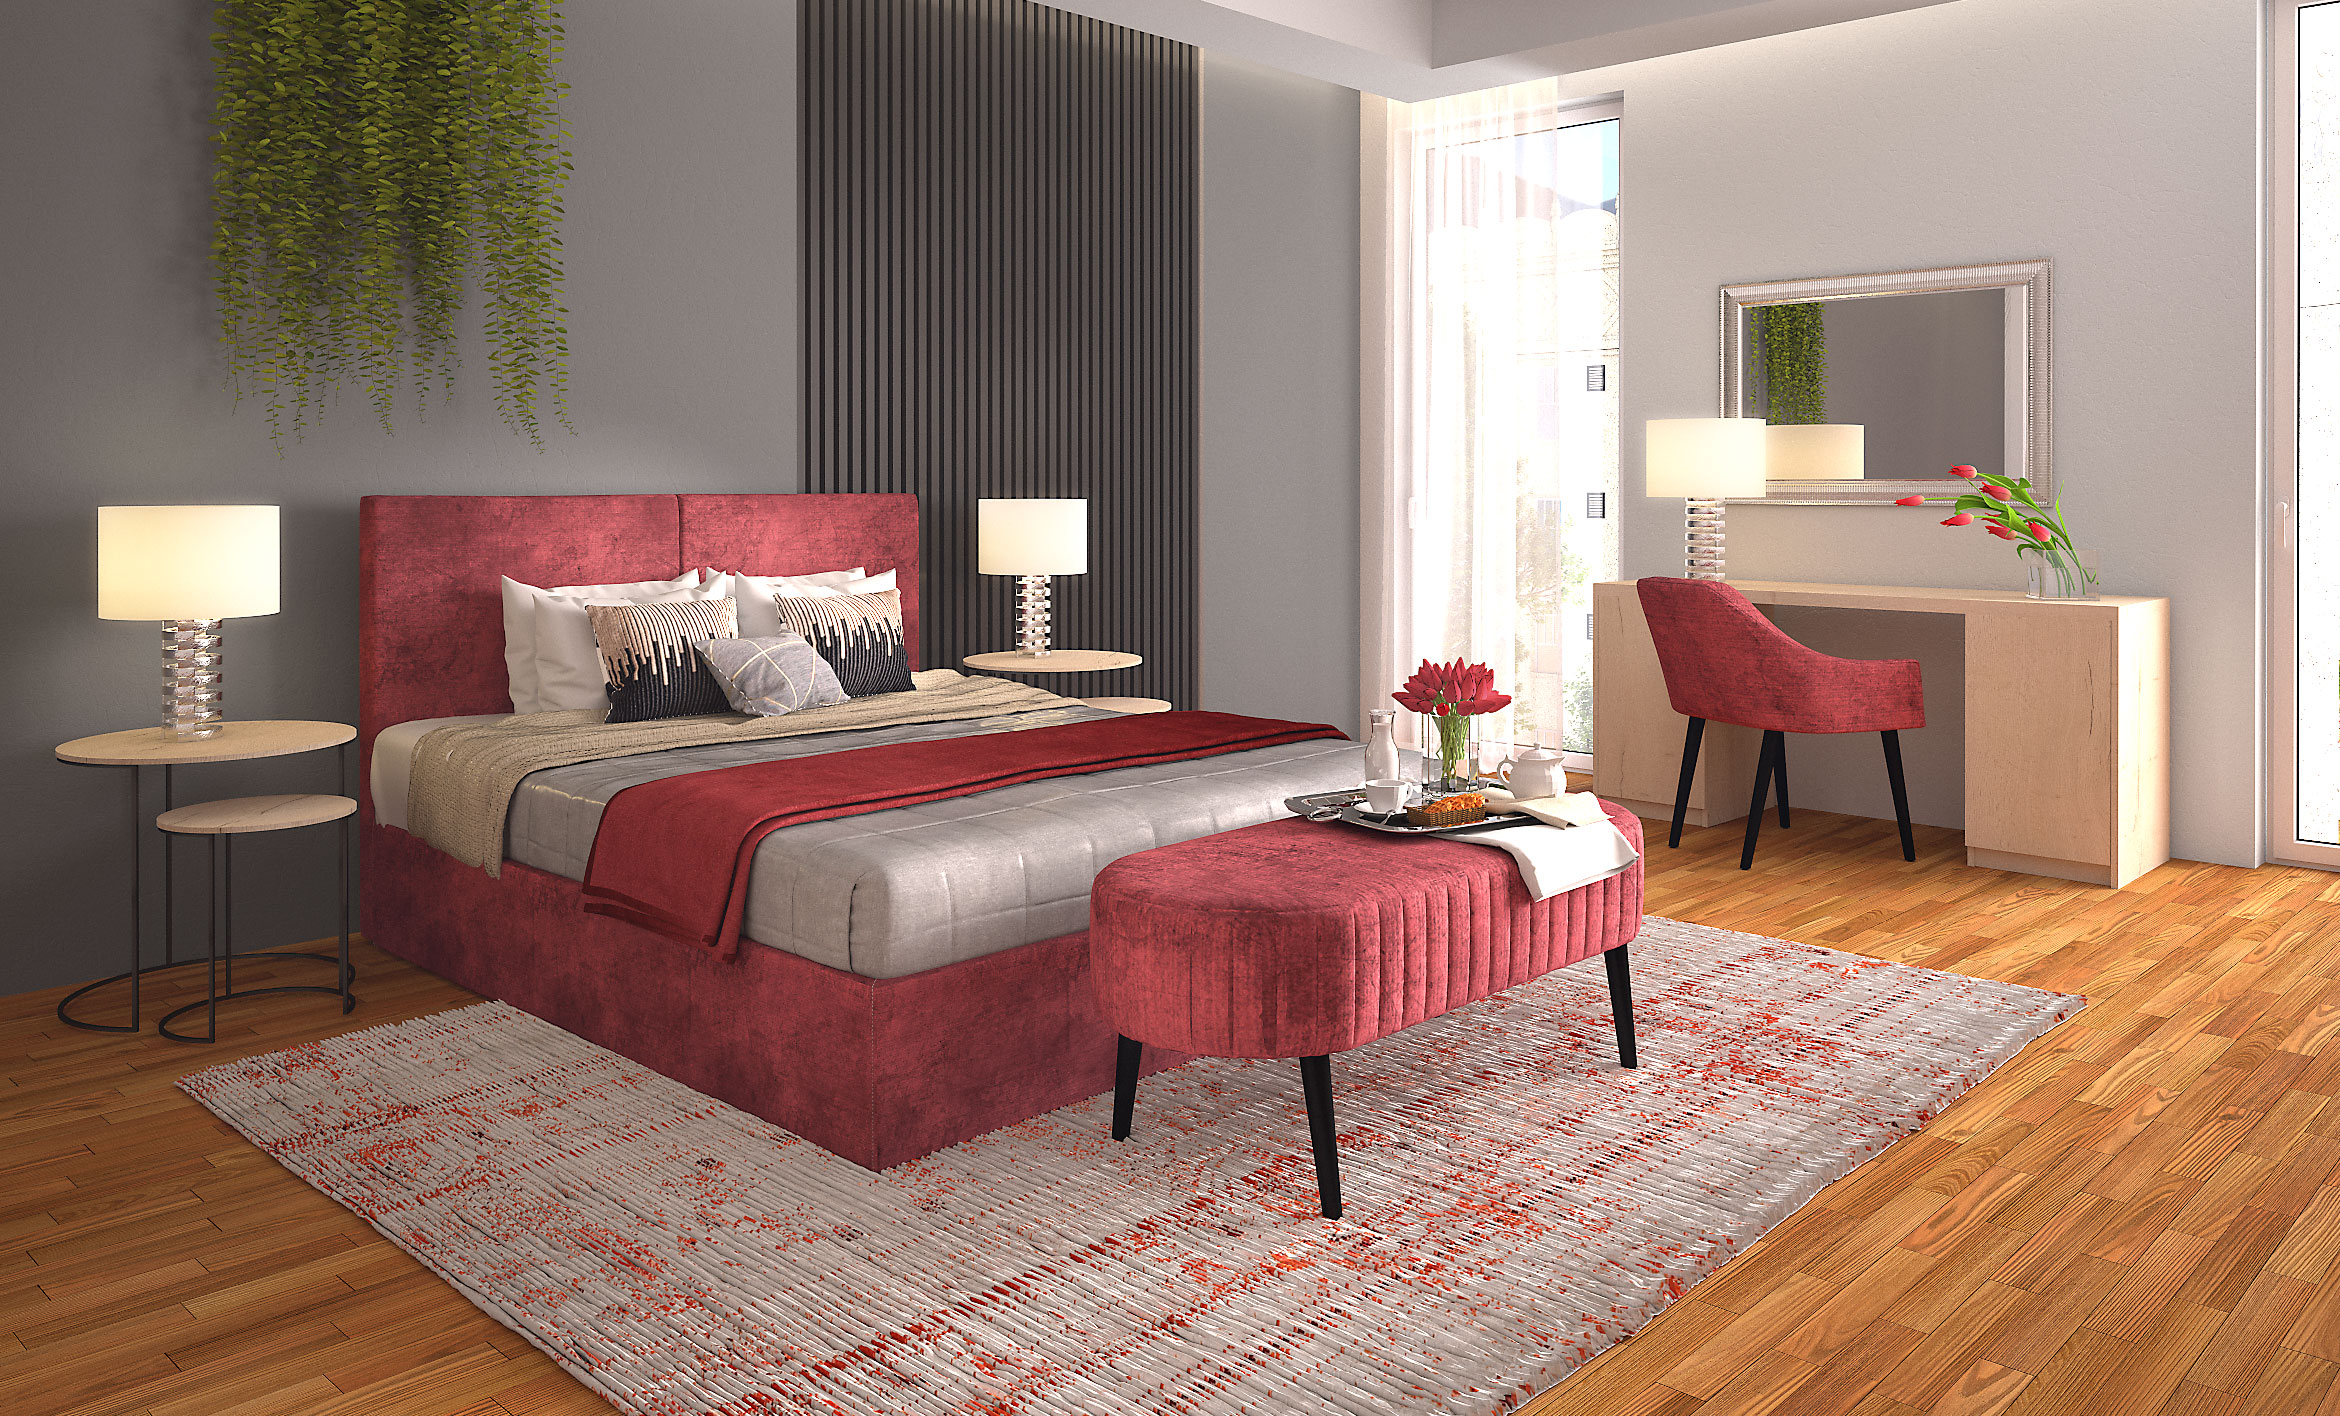 Polaszek Meble Nowoczesna sypialnia z łóżkiem tapicerowanym w kolorze czerwonym, drewnianą podłogą i stylowym wystrojem marki Meble Chojnice. Chojnice